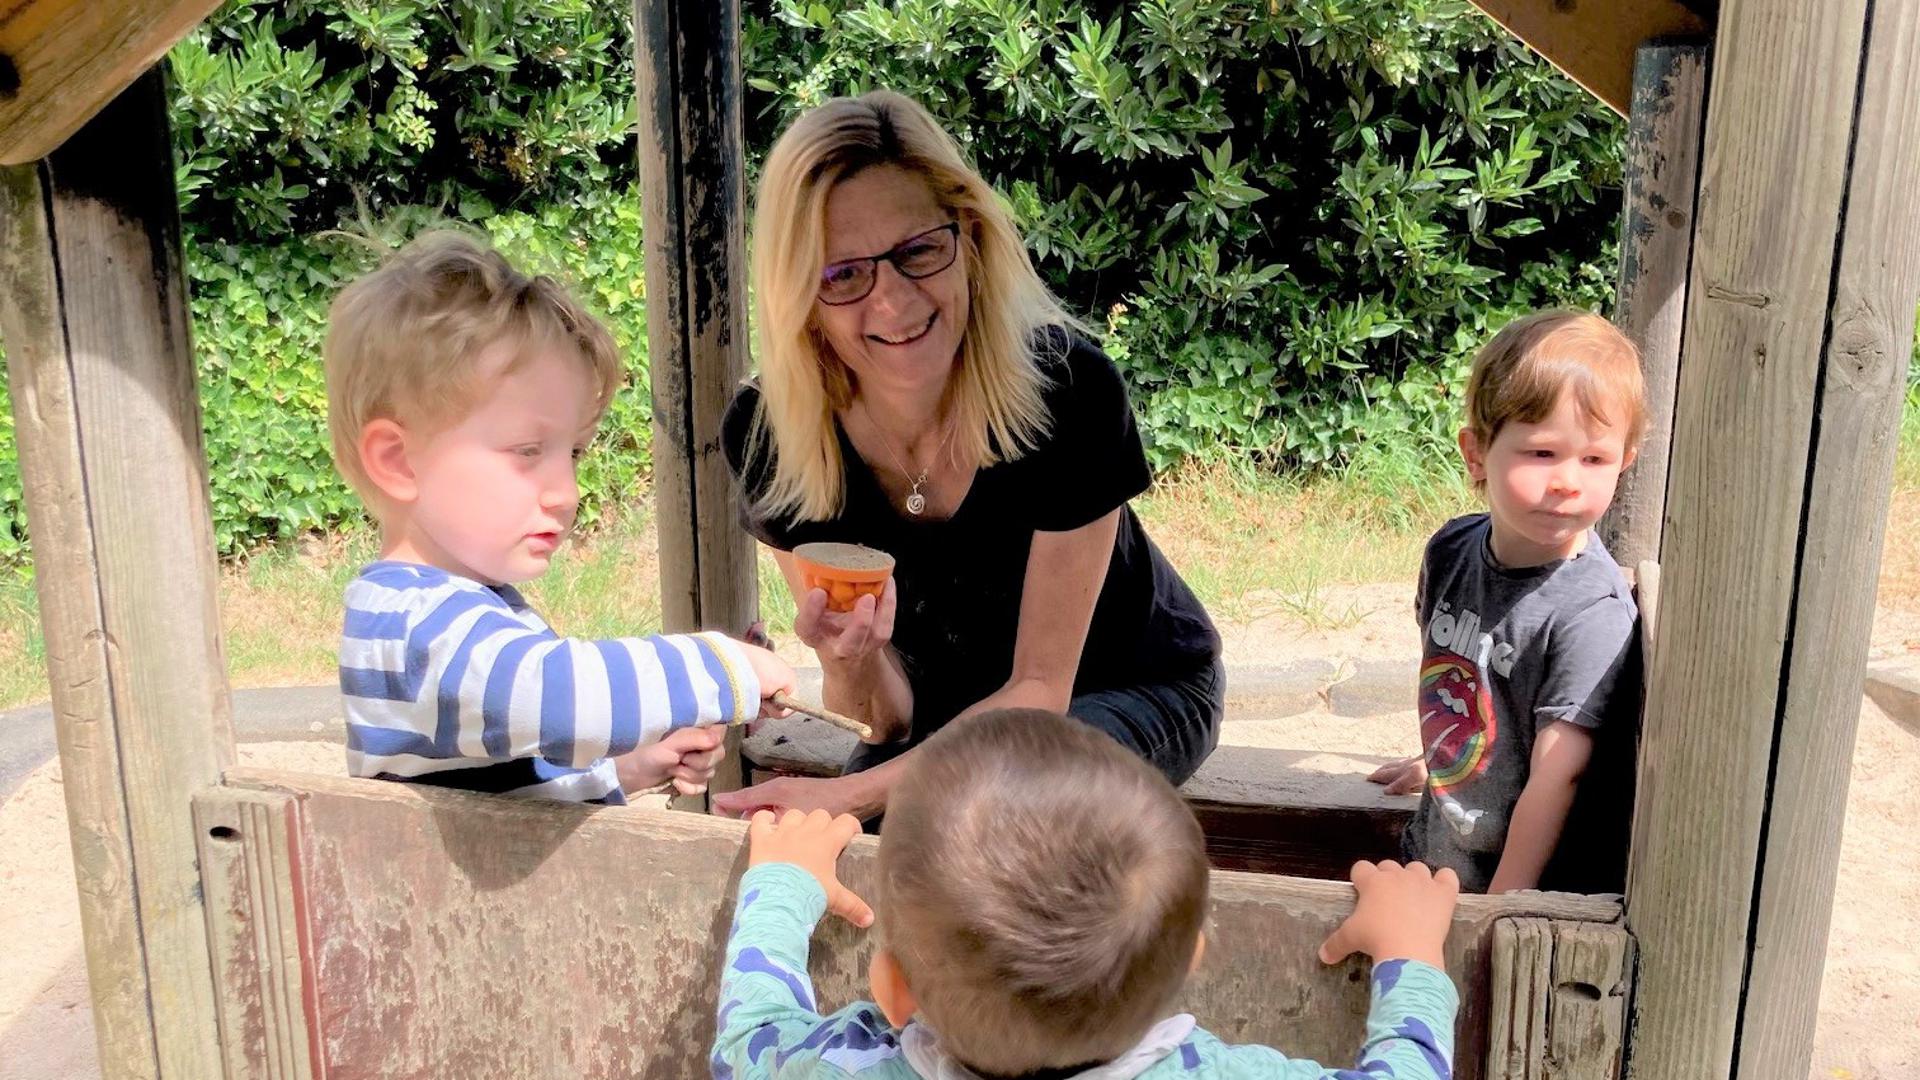 Angelika Großmann, Gründerin des Eltern-Netzwerks Muggensturm, spielt mit drei Kindern in einem Spielhaus auf einem Spielplatz.